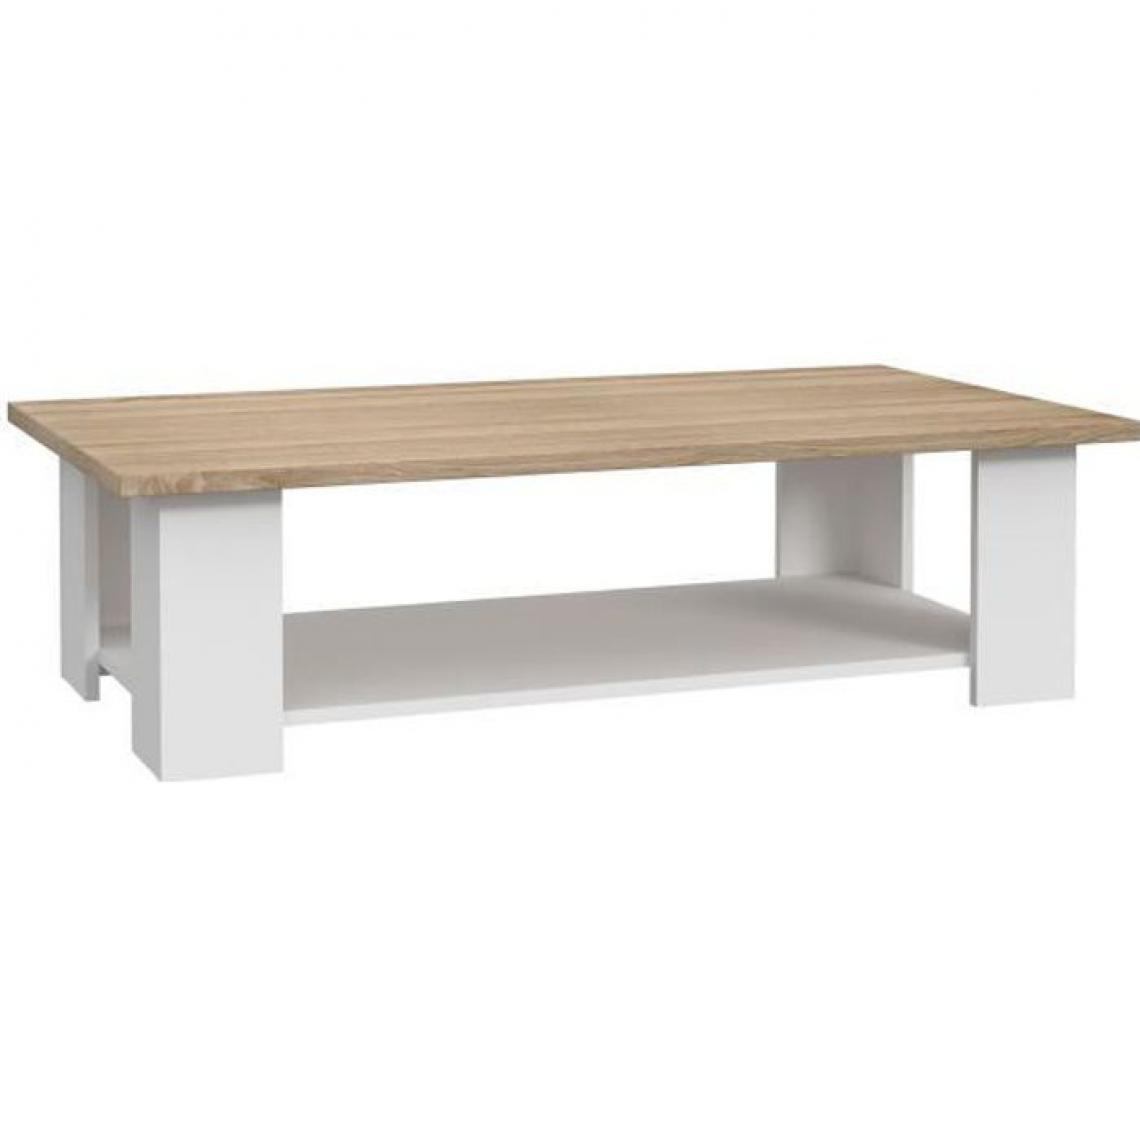 Cstore - PILVI - table basse rectangulaire - blanc et chêne sonoma - l 110xp 60xh 31 cm - Tables basses